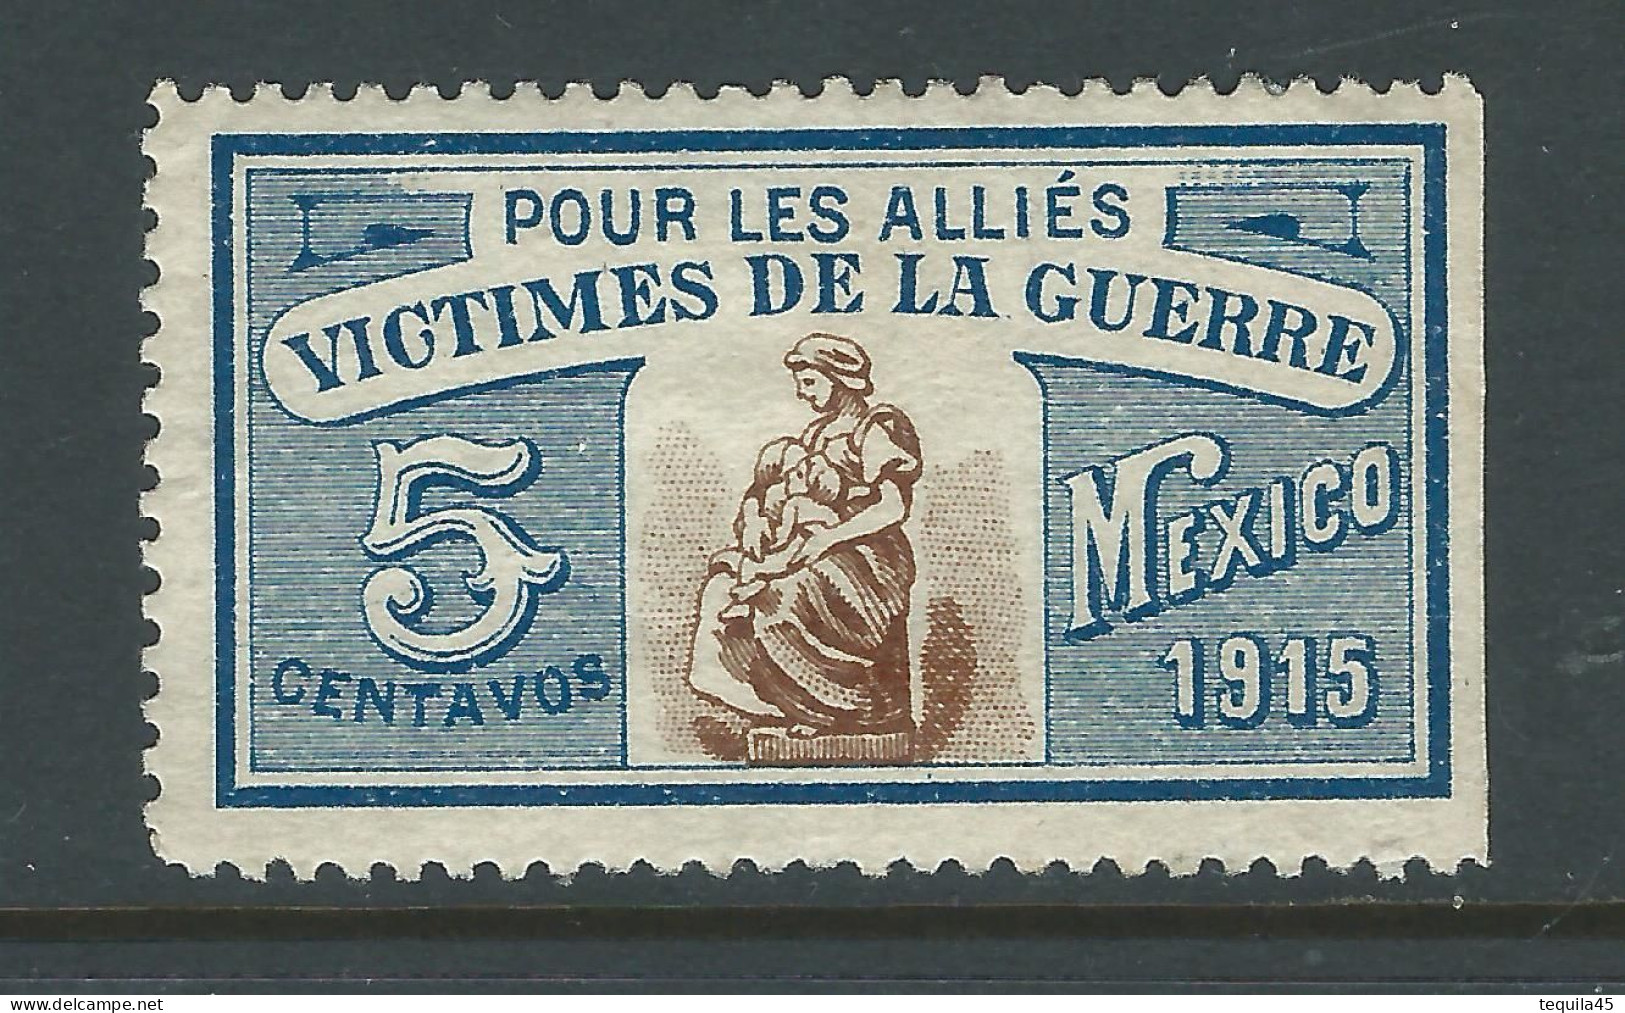 VIGNETTE CROIX-ROUGE Non DELANDRE FRANCE Comité De MEXICO 1915 WWI WW1 Cinderella Poster Stamp 1914 1918 War - Croce Rossa